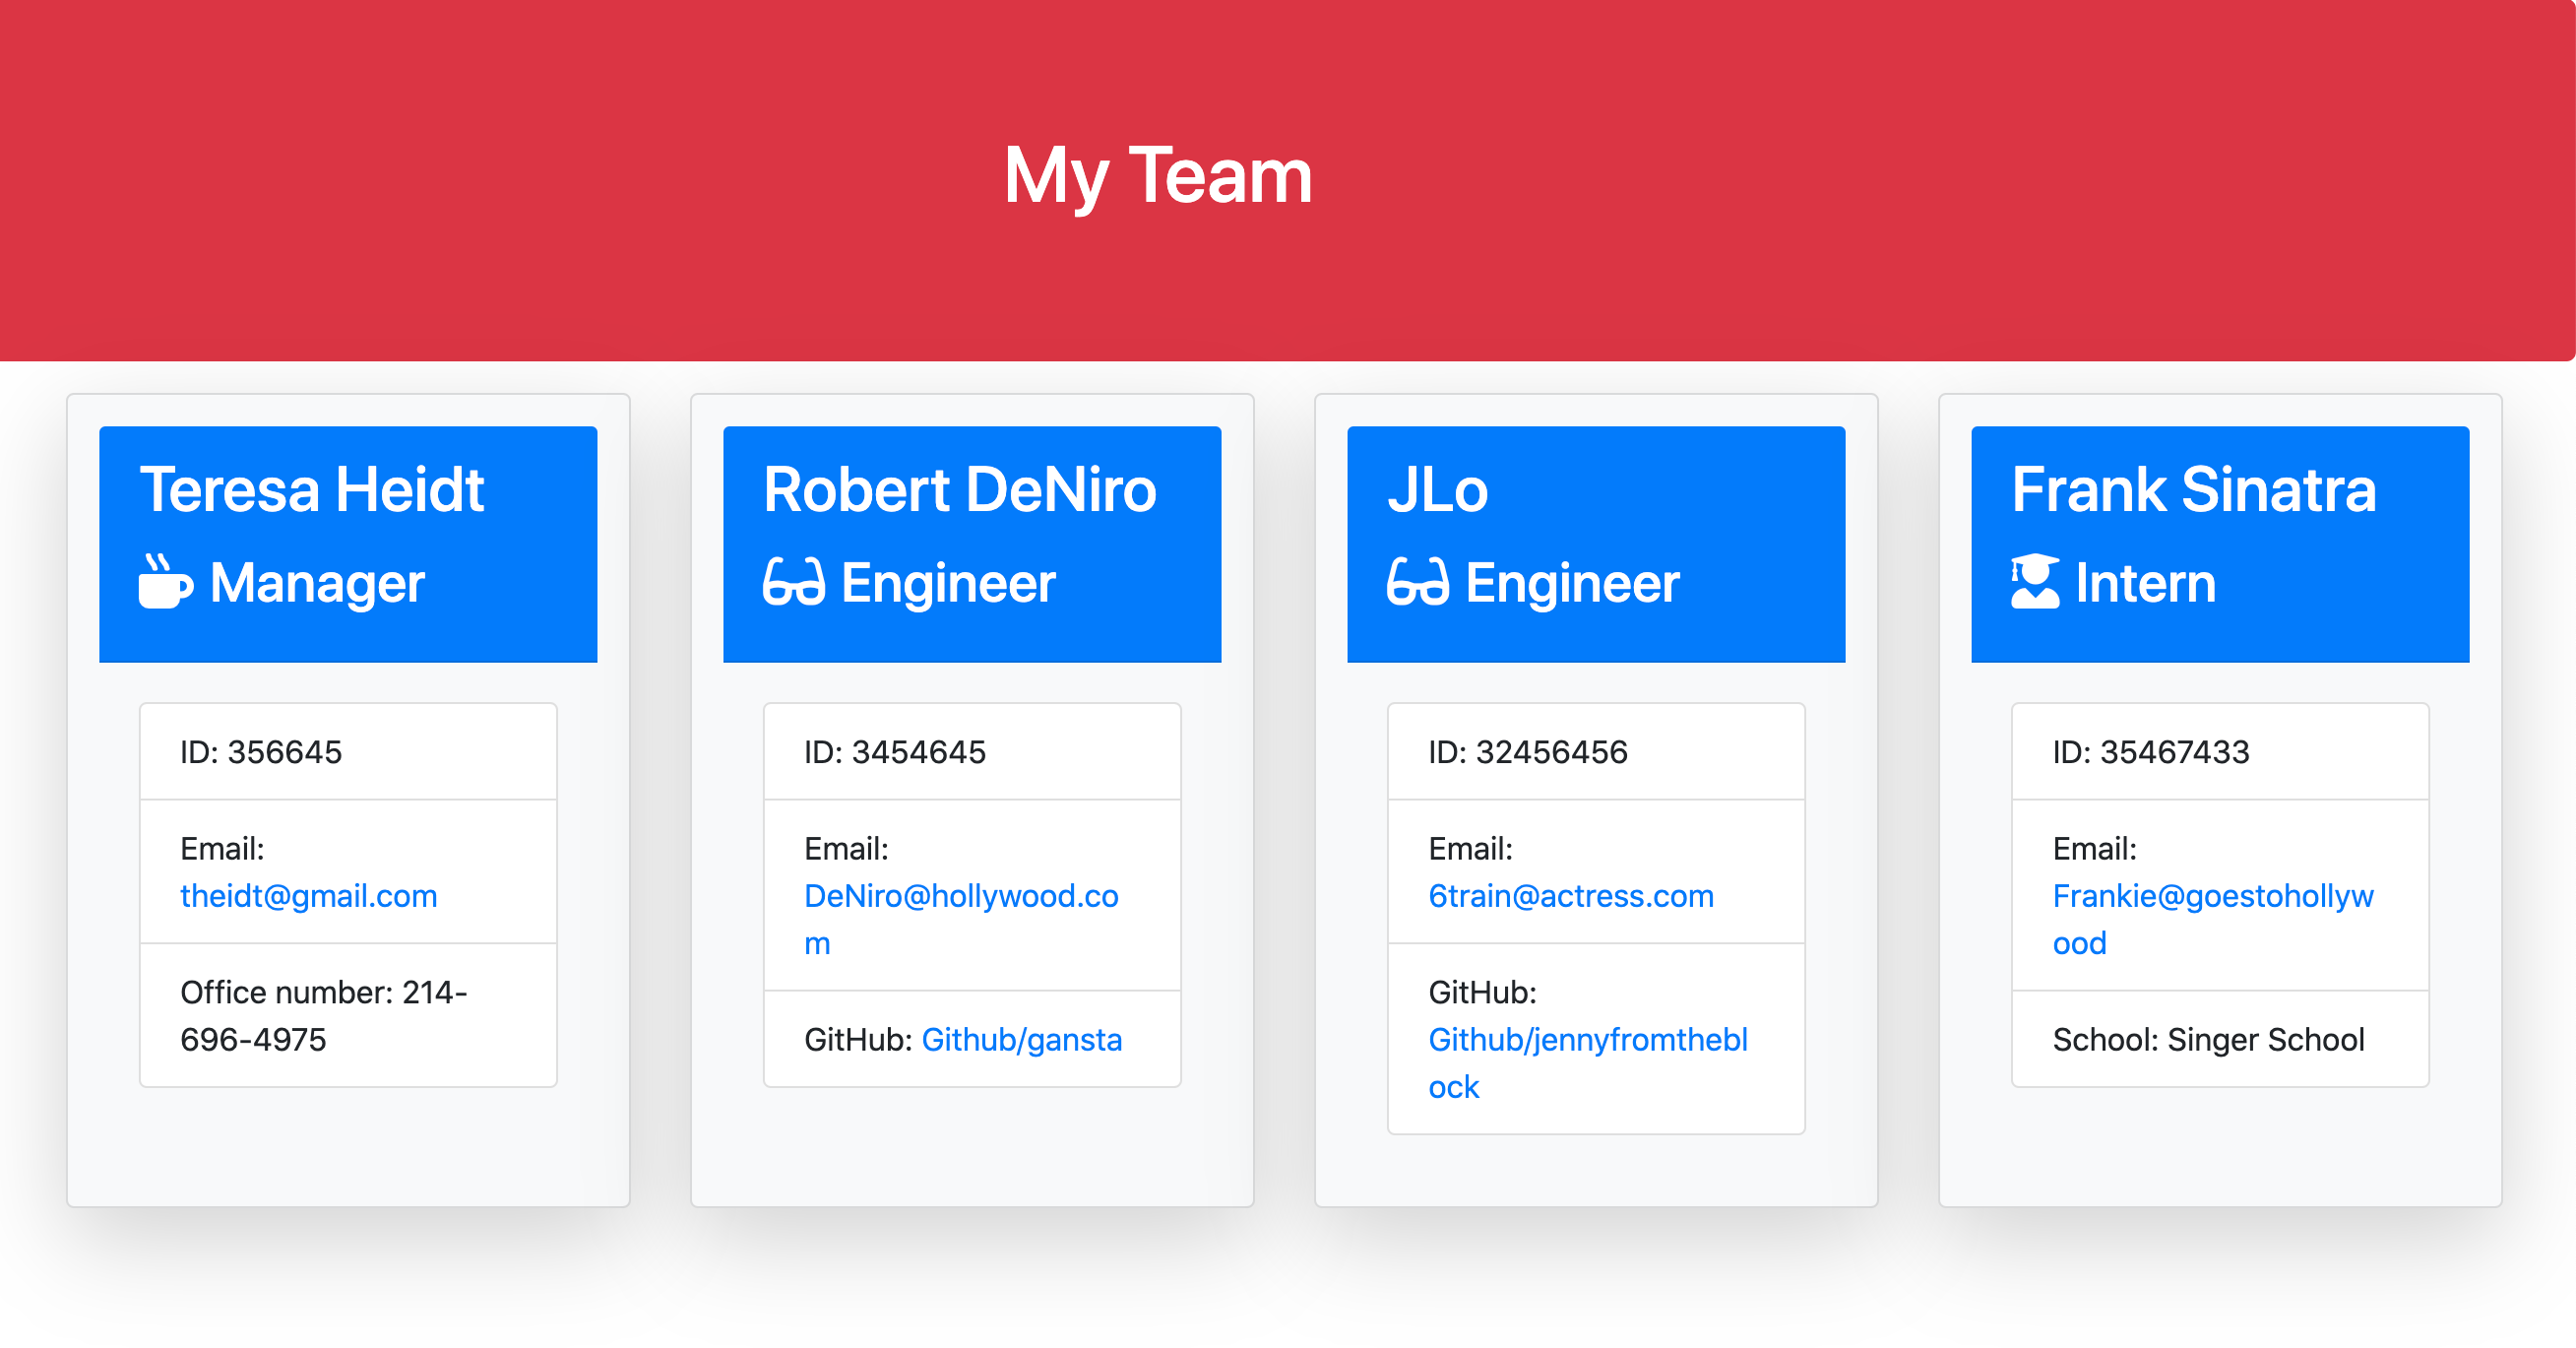 Team Profile Generator